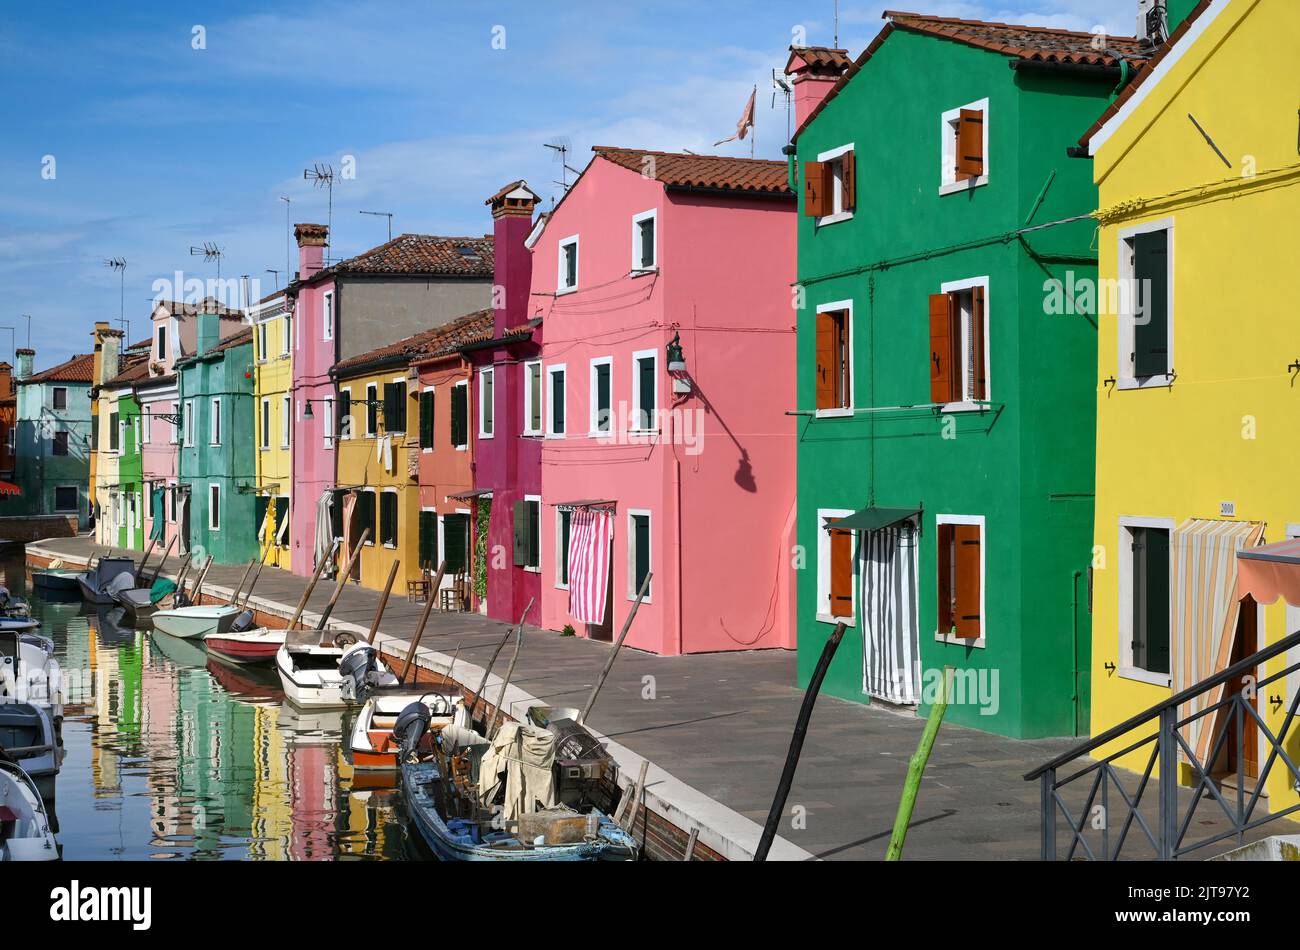 Boote, die an sonnigen Tagen in der Nähe von bunten Häusern auf ruhigem Kanalwasser vor blauem Himmel auf der Straße der Insel Burano in Italien schwimmen Stockfoto